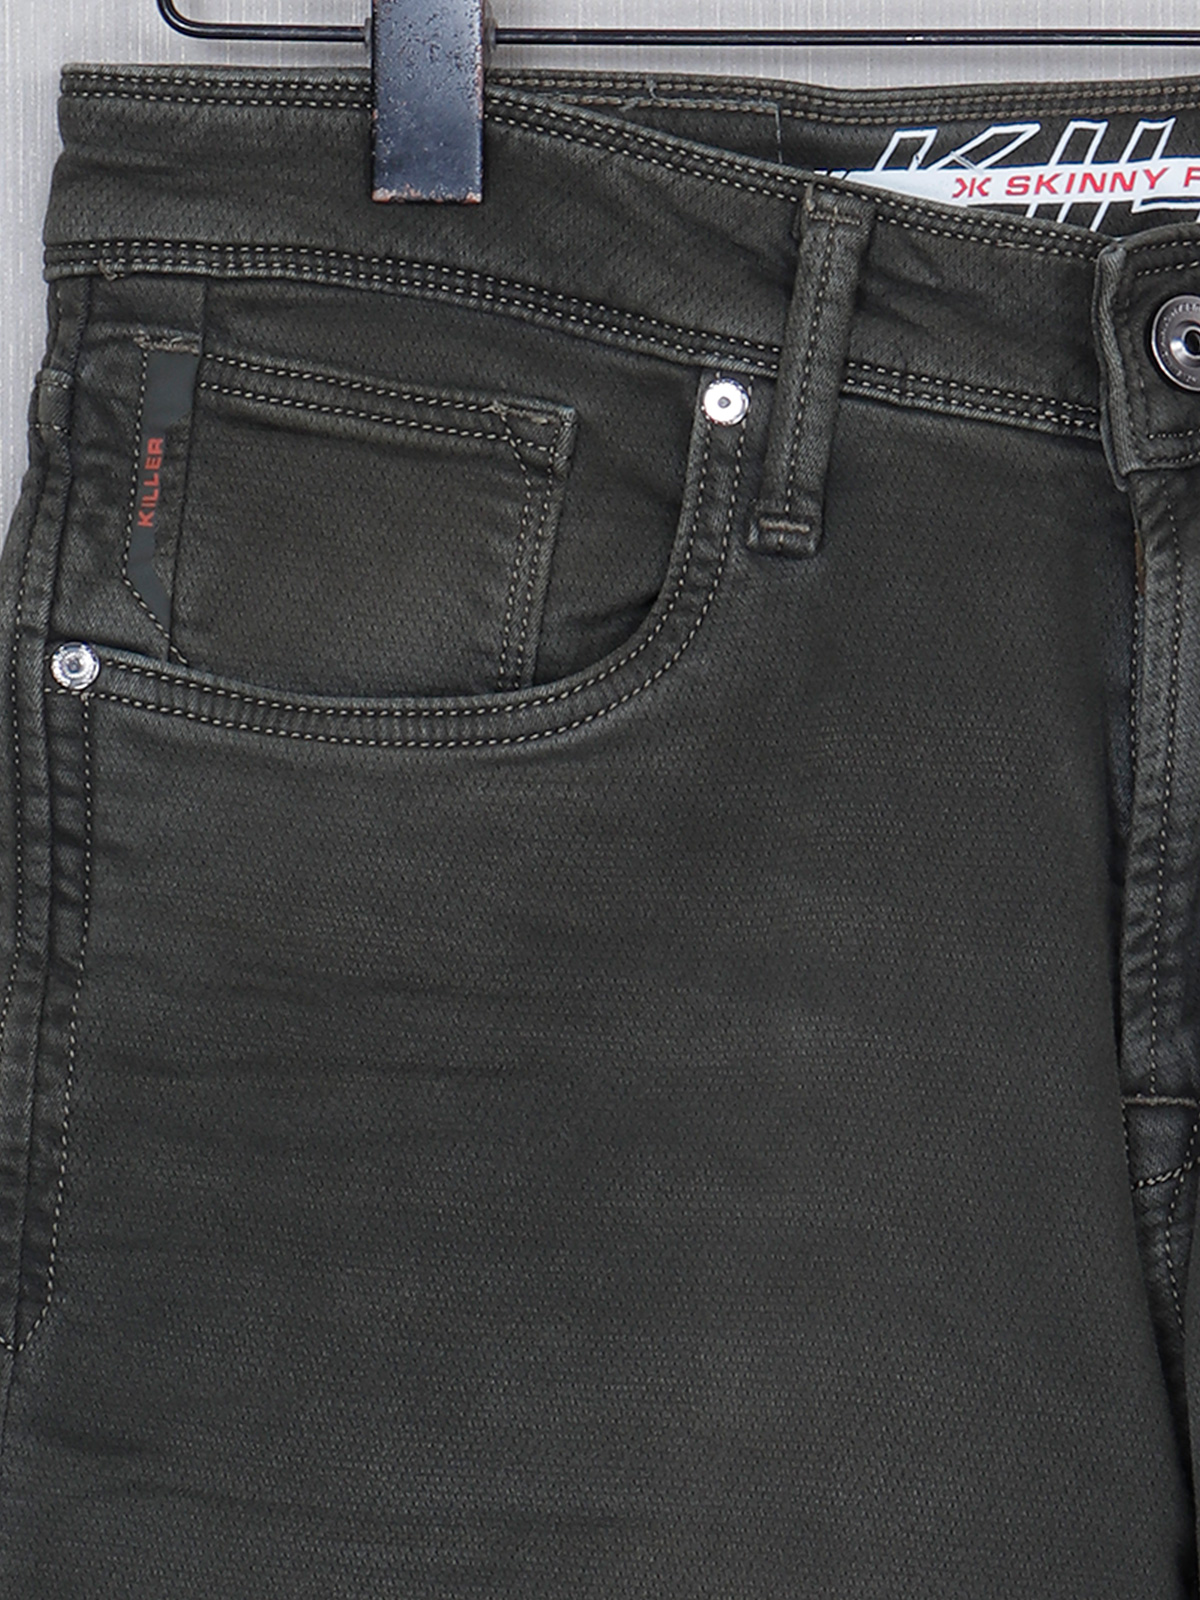 Buy Blue Solid Slim Fit Jeans for Men Online at Killer Jeans | 510169